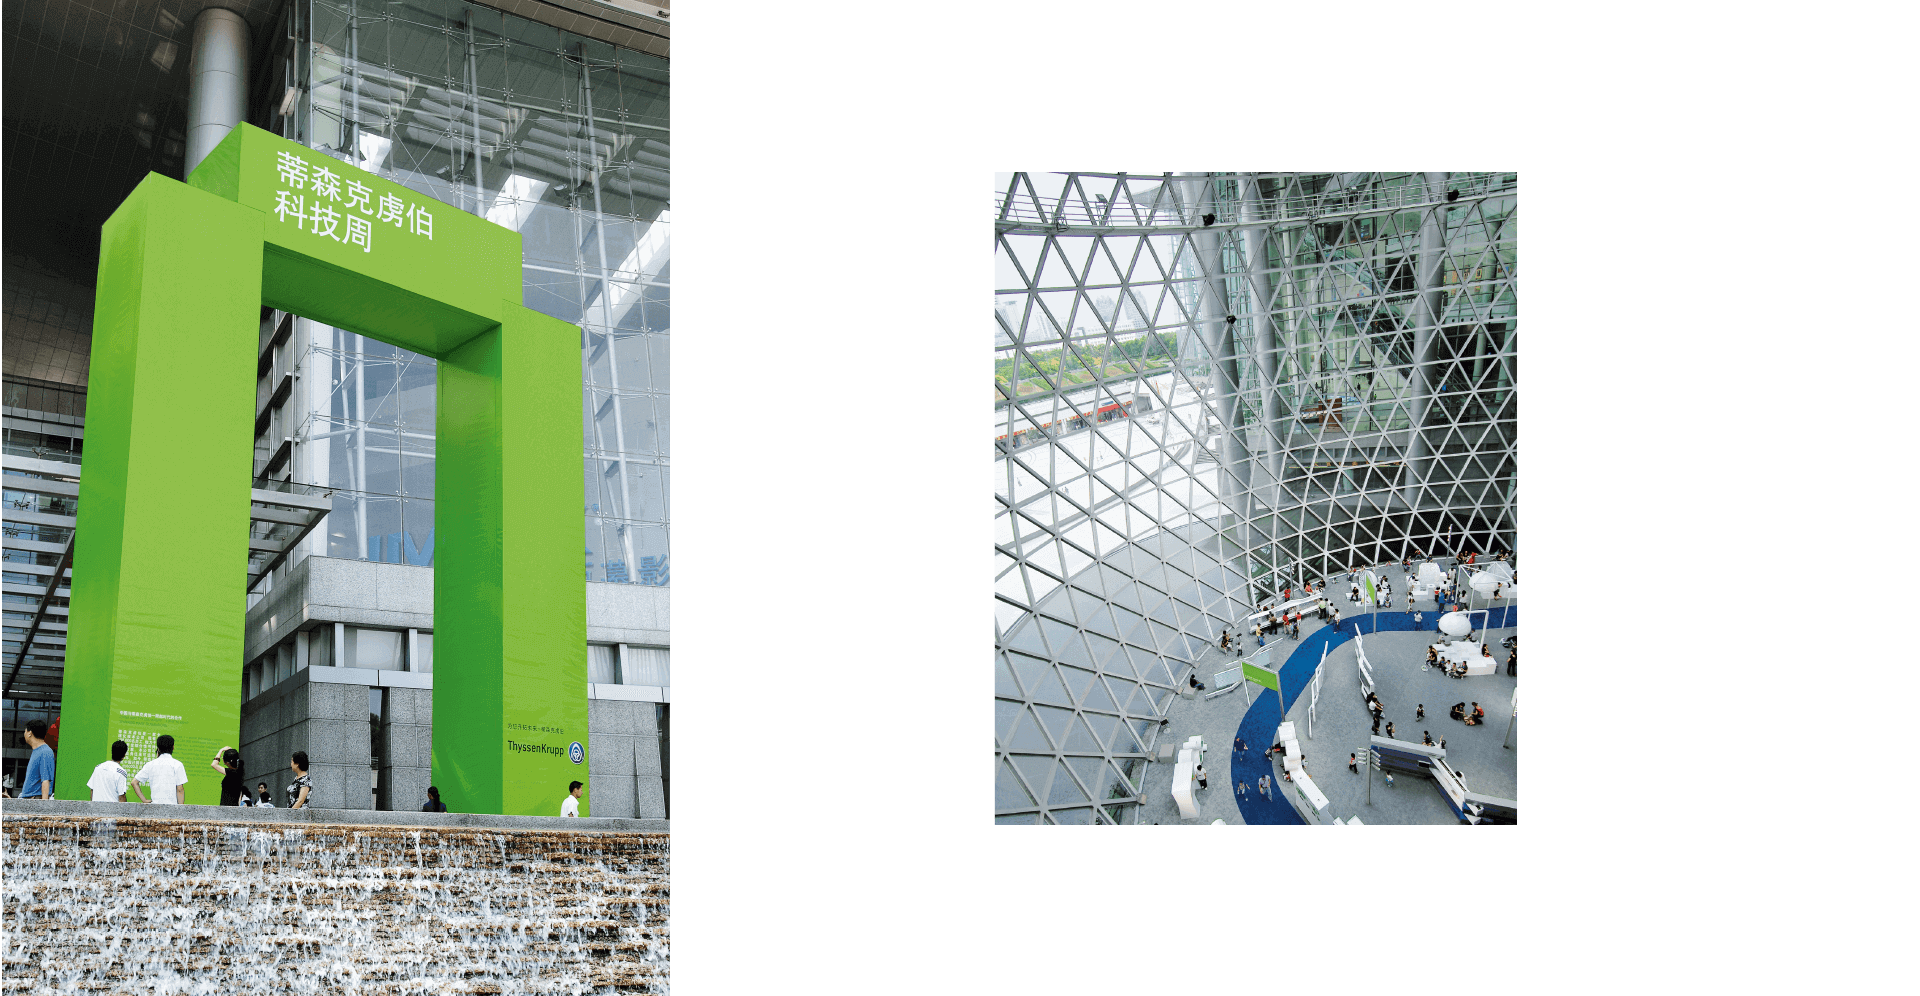 Grüne Skulptur für Ideenpark von ThyssenKrupp und Innenraum mit Wand in Netzoptik